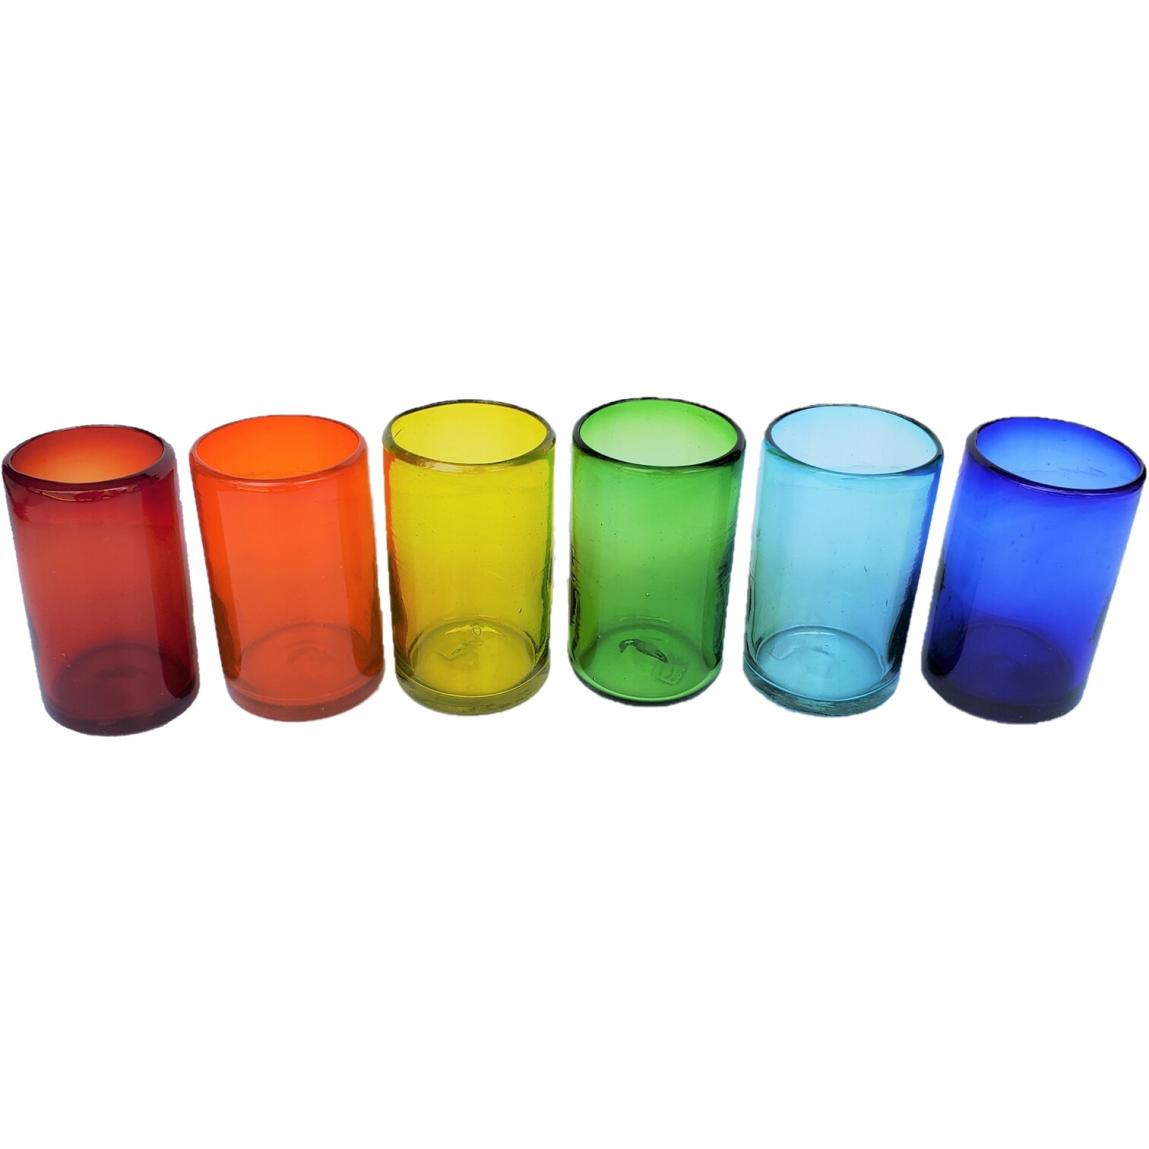 Ofertas / Juego de 6 vasos grandes de colores Arcoris, 14 oz, Vidrio Reciclado, Libre de Plomo y Toxinas / stos artesanales vasos le darn un toque clsico a su bebida favorita.